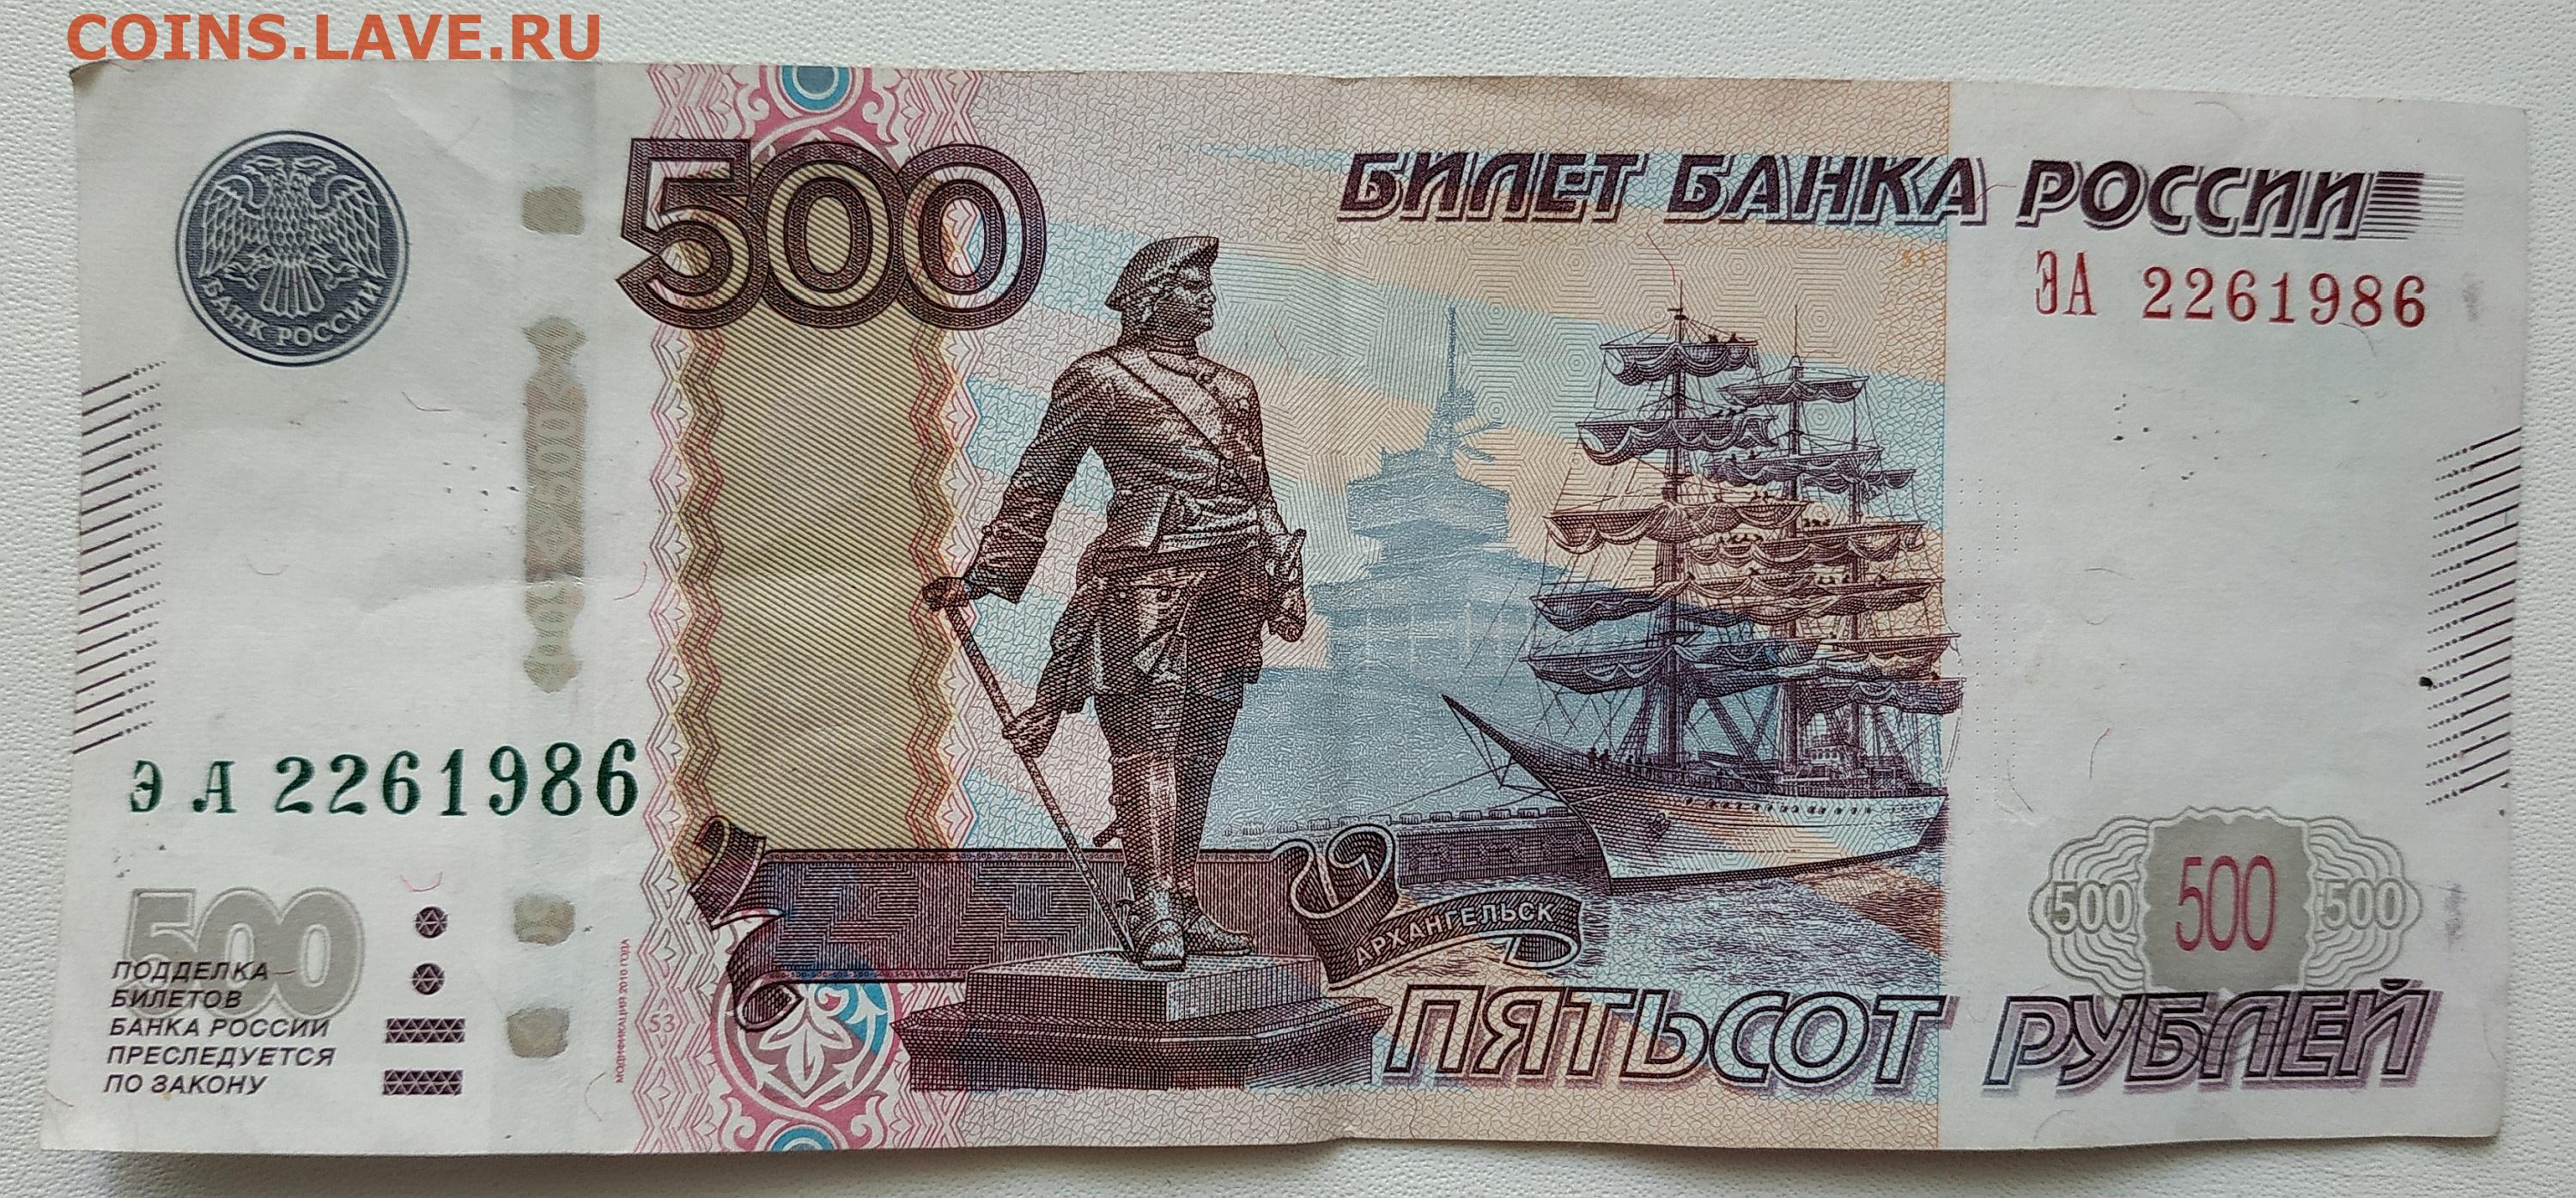 300 500 рублей. Купюра 500 рублей. 500 Рублей. 500 Рублей 1997 модификация 2010. 500 Рублей купюра для печати.